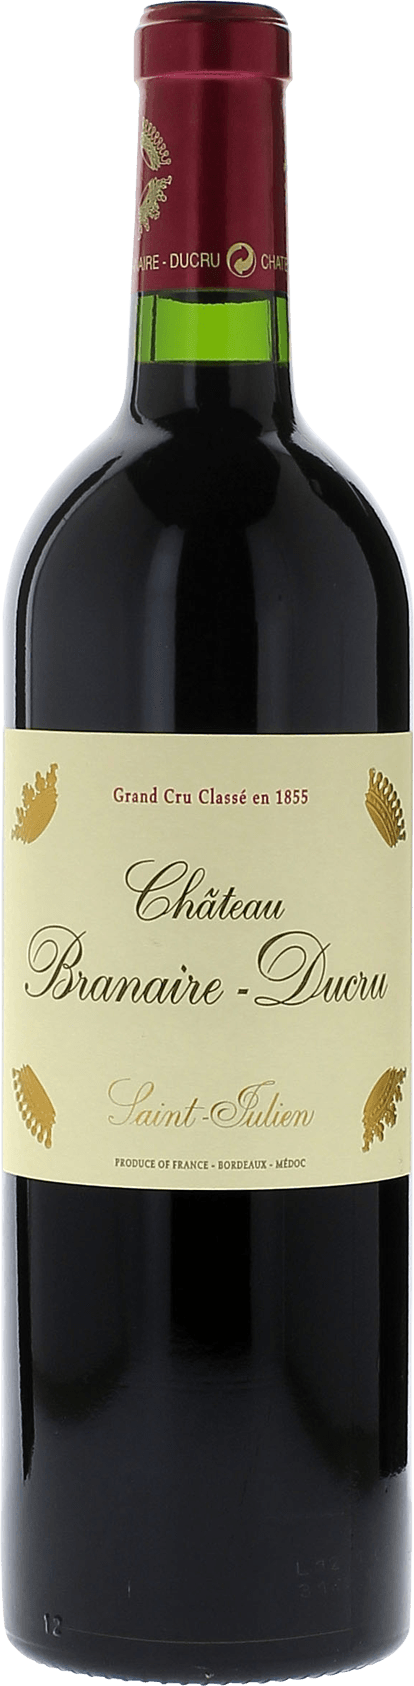 Branaire ducru 2015 4me Grand cru class Saint-Julien, Bordeaux rouge